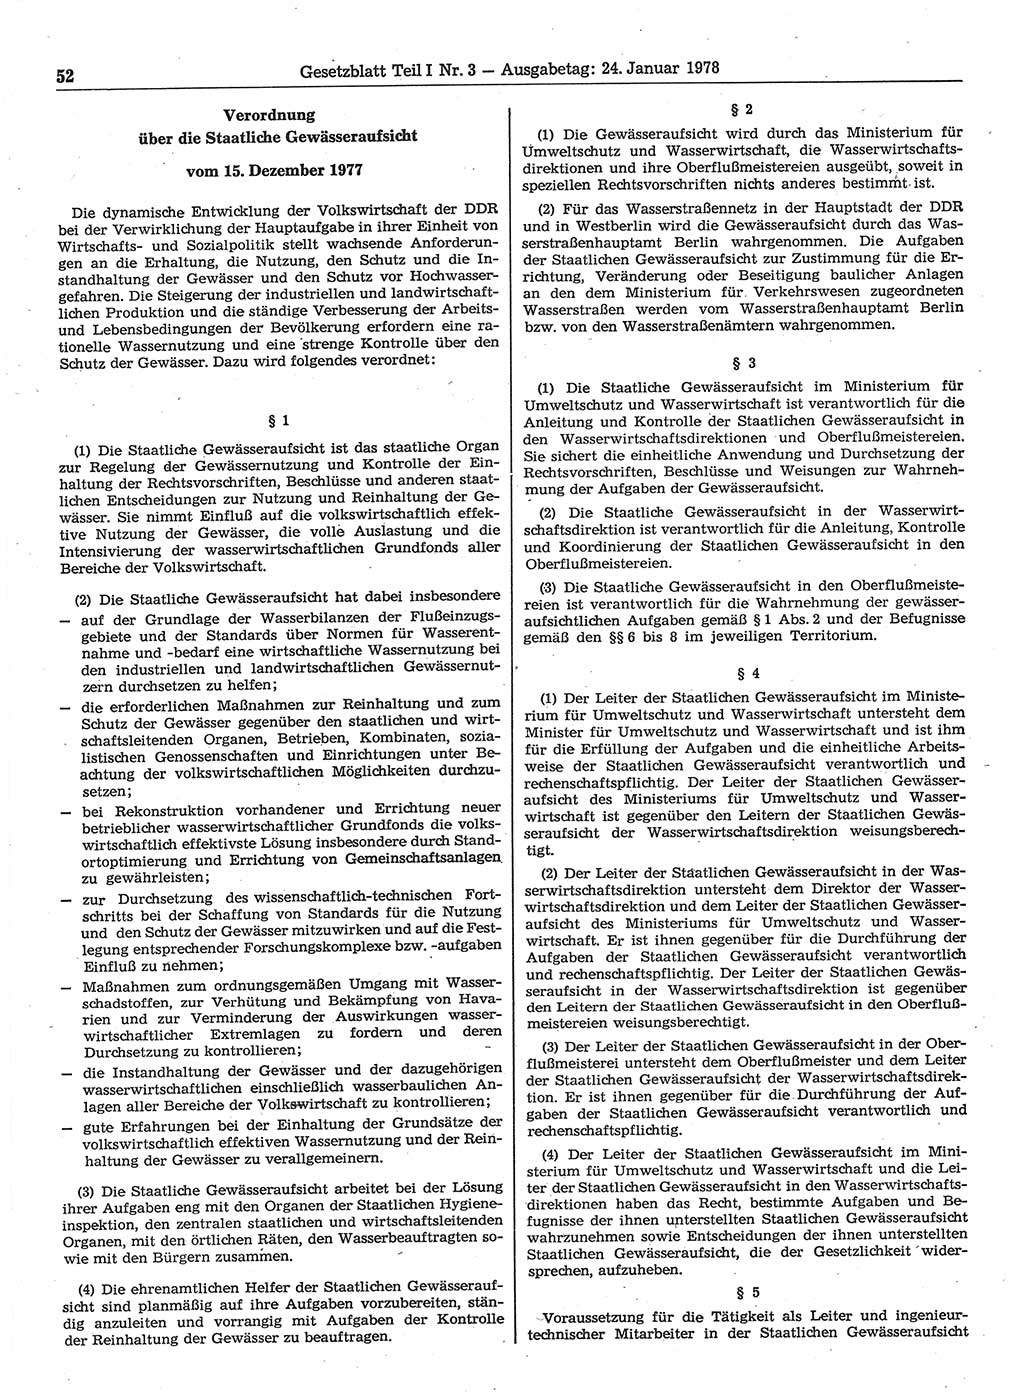 Gesetzblatt (GBl.) der Deutschen Demokratischen Republik (DDR) Teil Ⅰ 1978, Seite 52 (GBl. DDR Ⅰ 1978, S. 52)